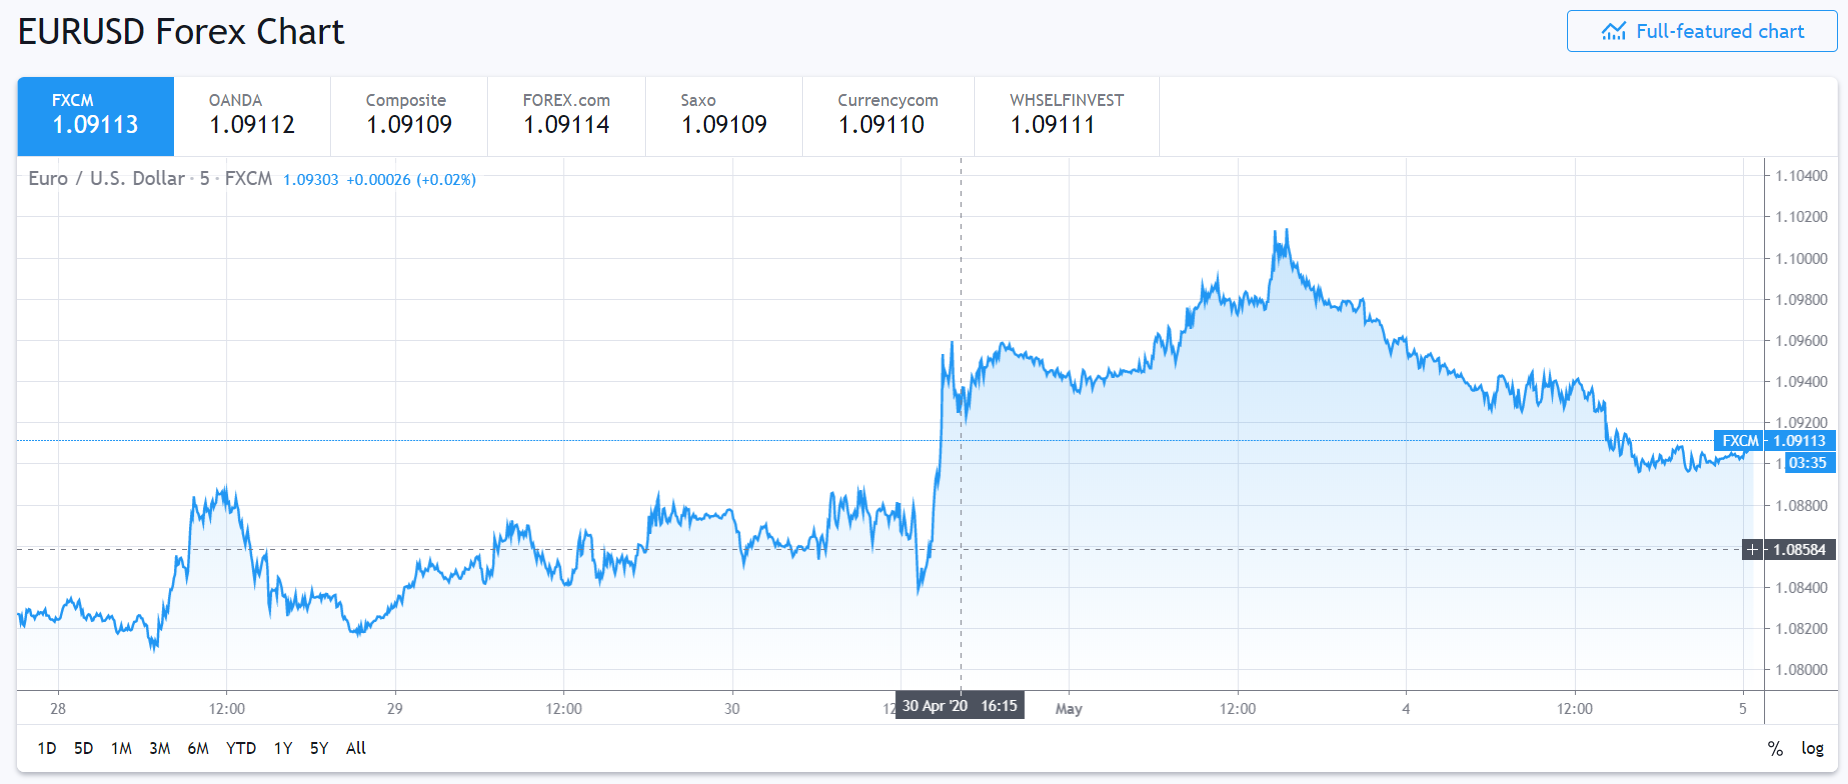 TradingView - EURUSD 5 D chart - 05 May 2020